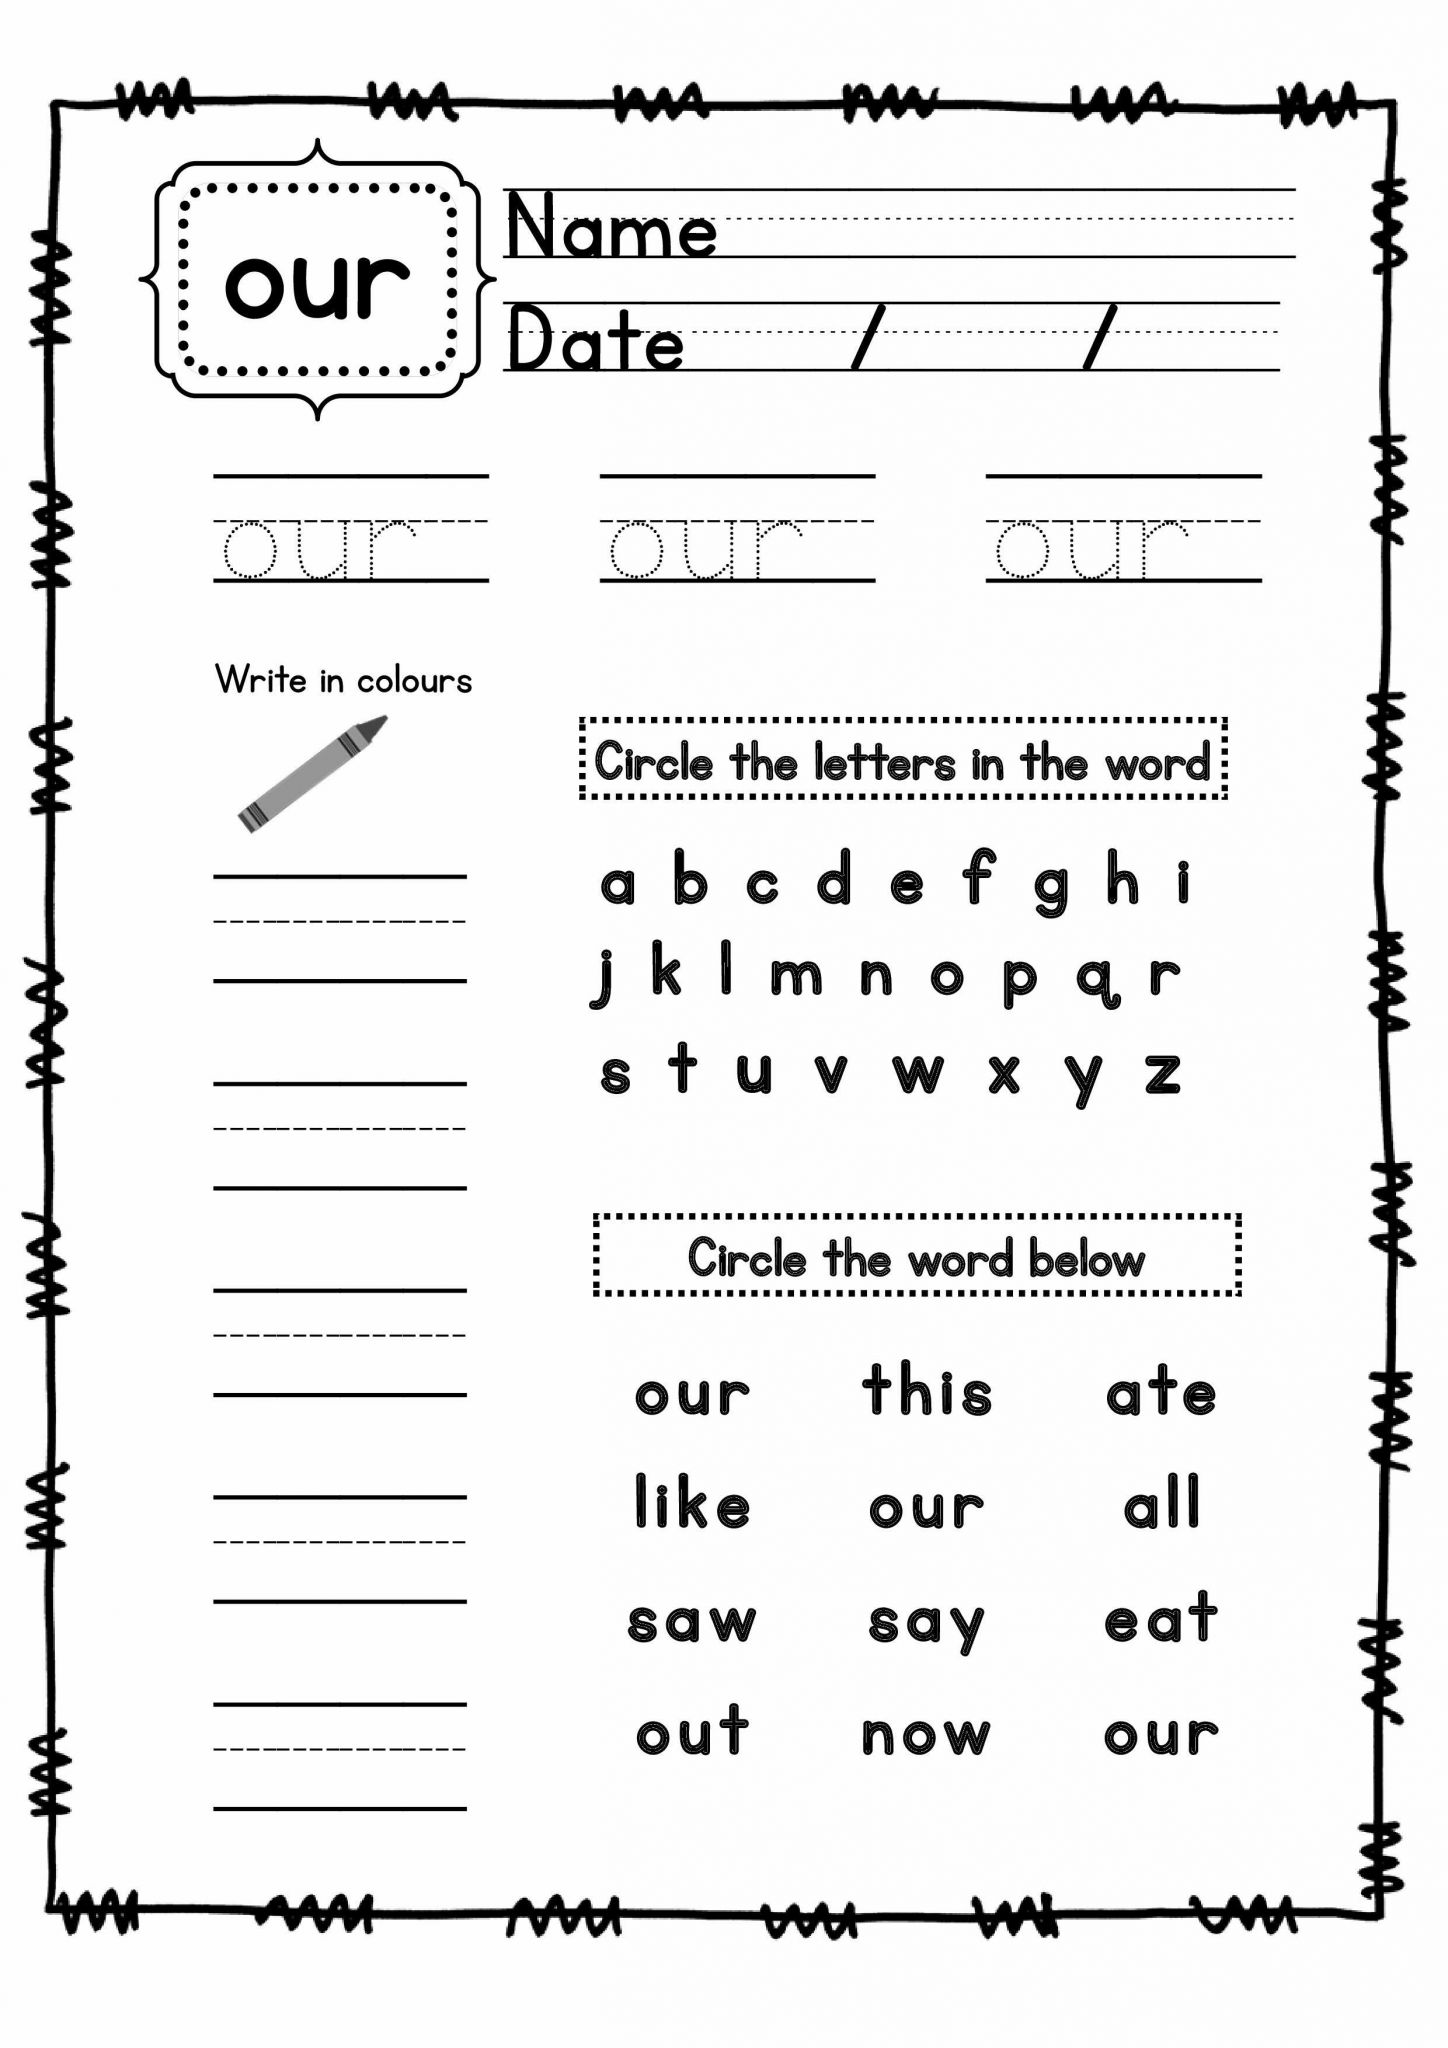 Kindergarten Spelling Worksheets as Well as Sight Word Practice Worksheets Lovely Spelling Words Printable